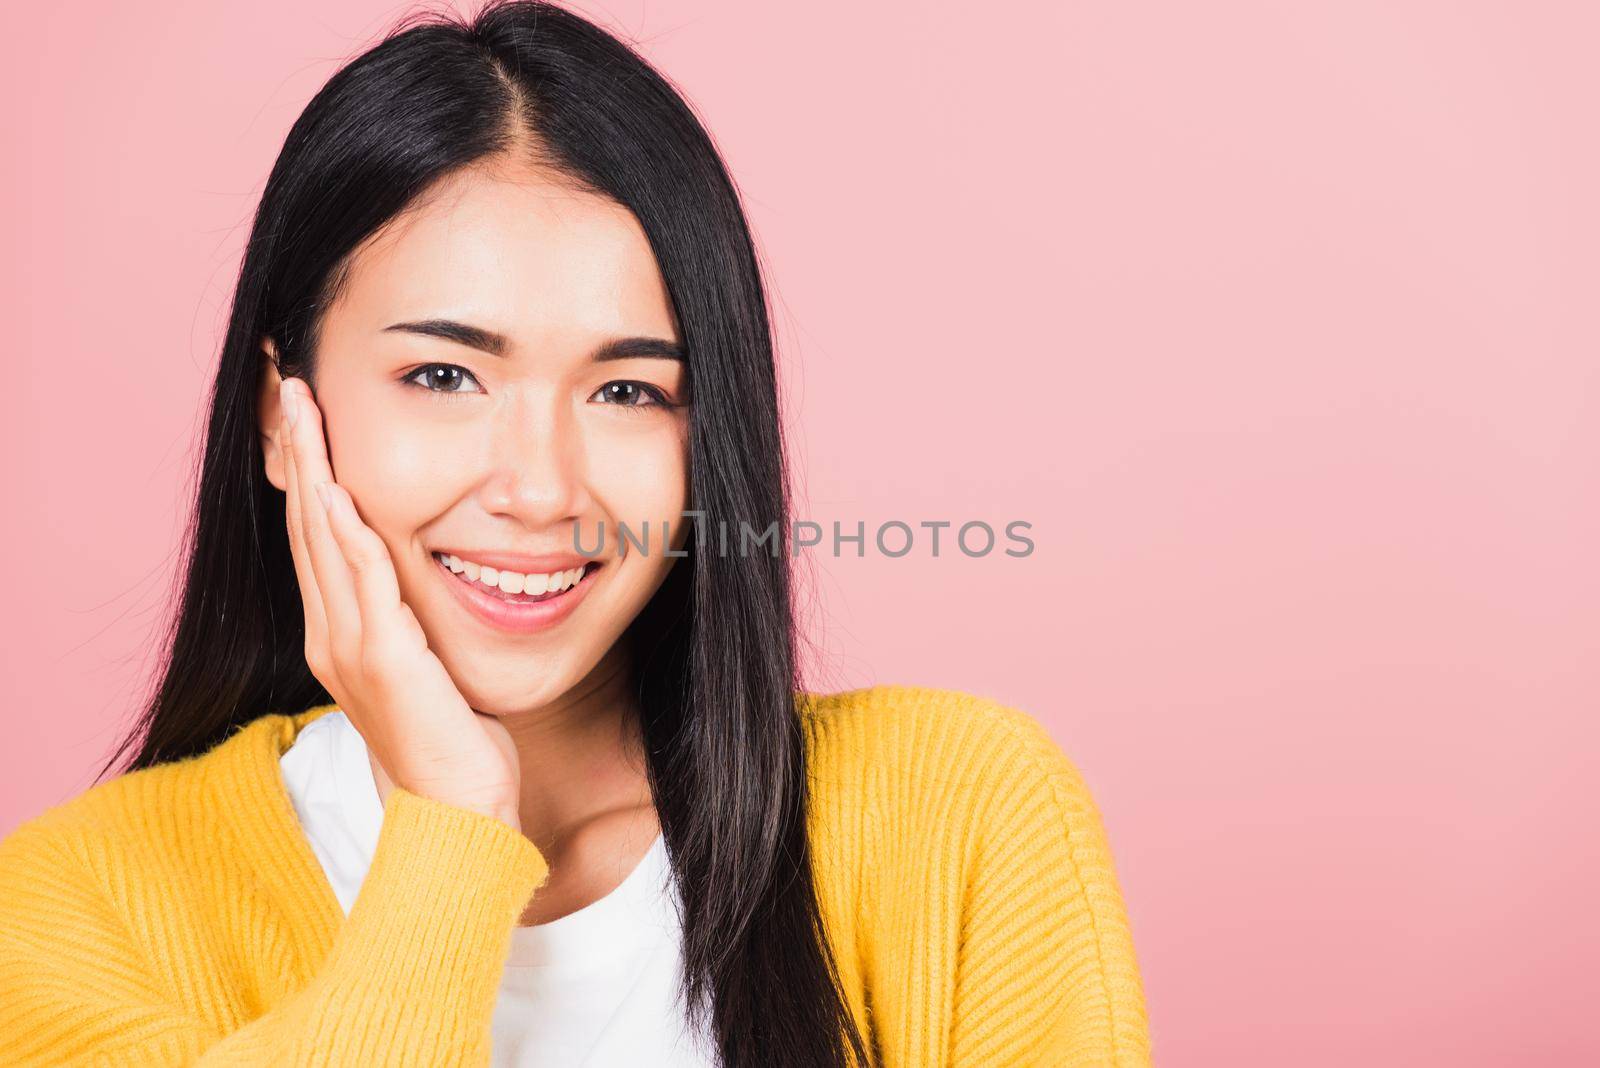 woman teen smiling white teeth surprised excited celebrating gesturing by Sorapop